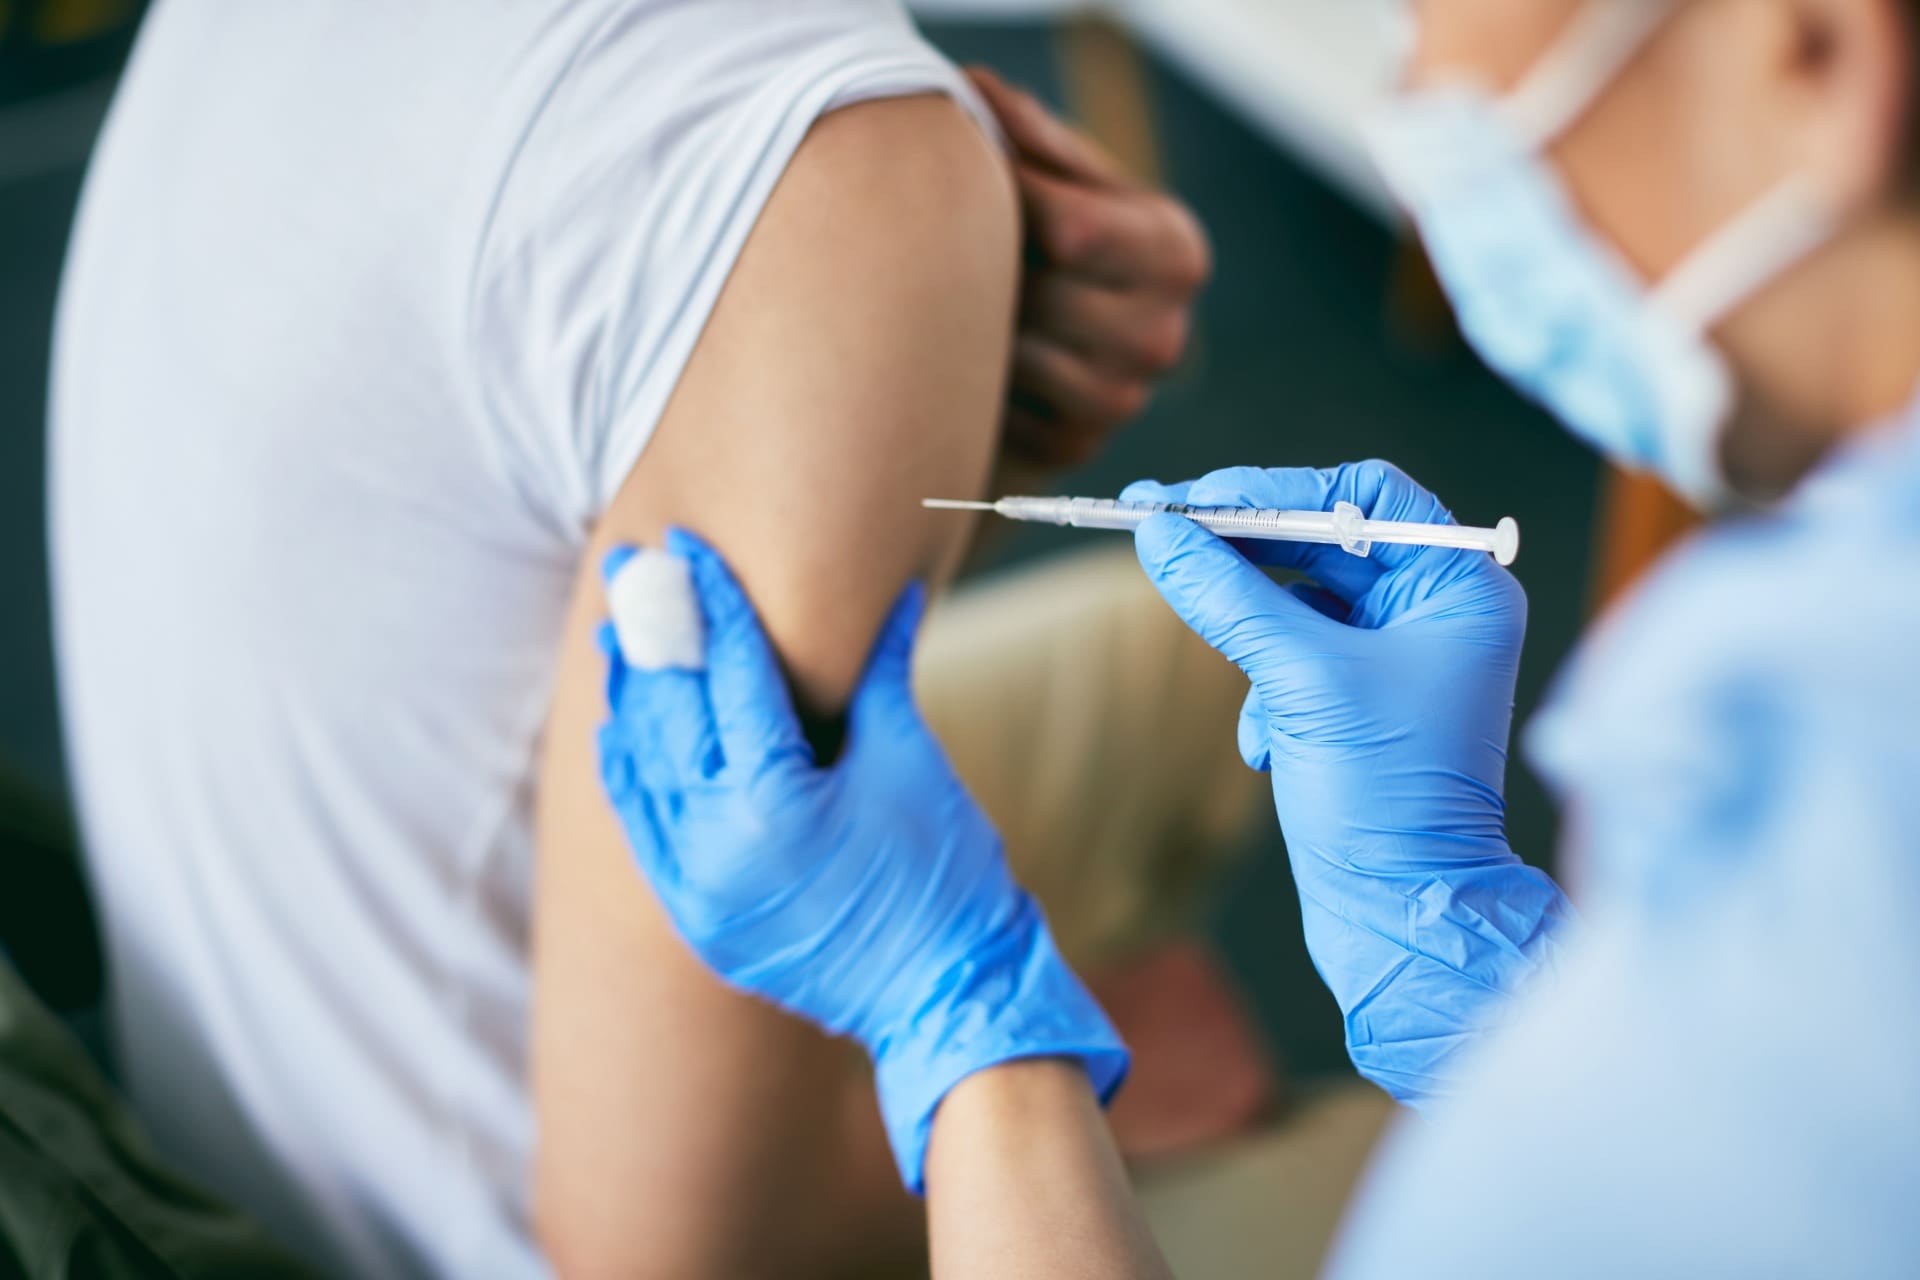 enfermeiros opoem-se a administracao da vacina por farmaceuticos